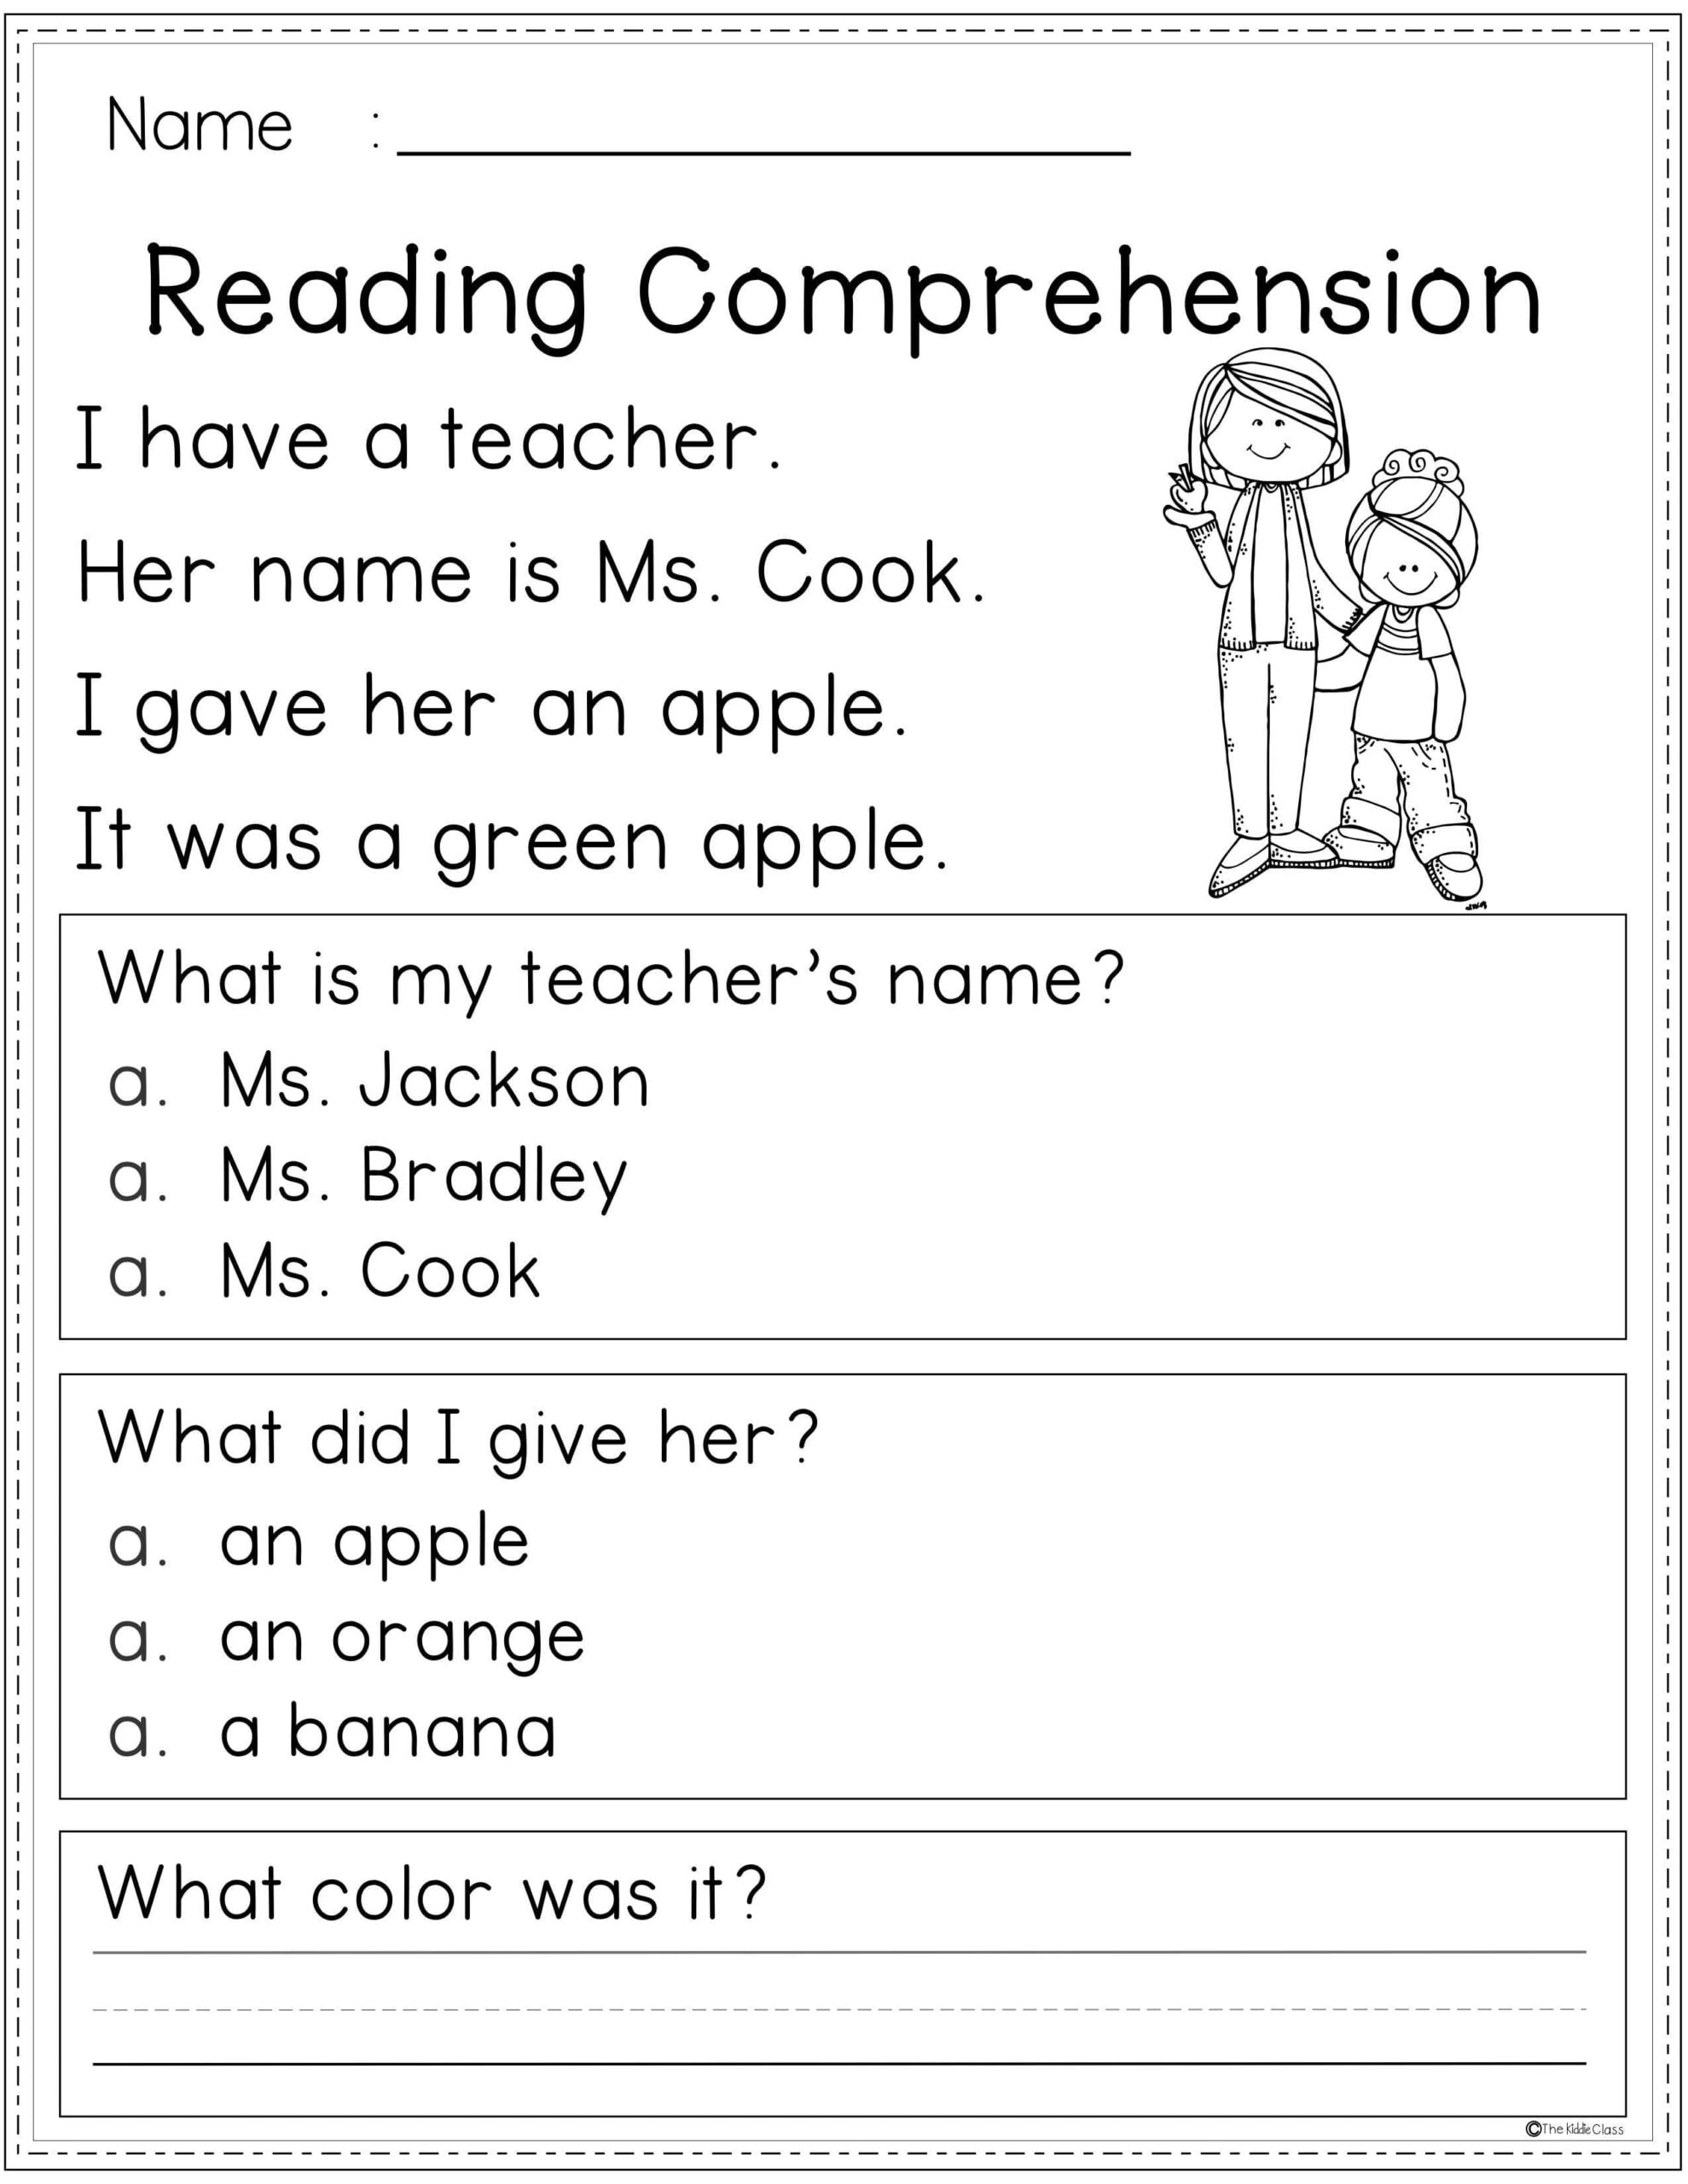 Free Reading Comprehension Kindergarten Reading Worksheets Reading Comprehension Worksheets Reading Worksheets